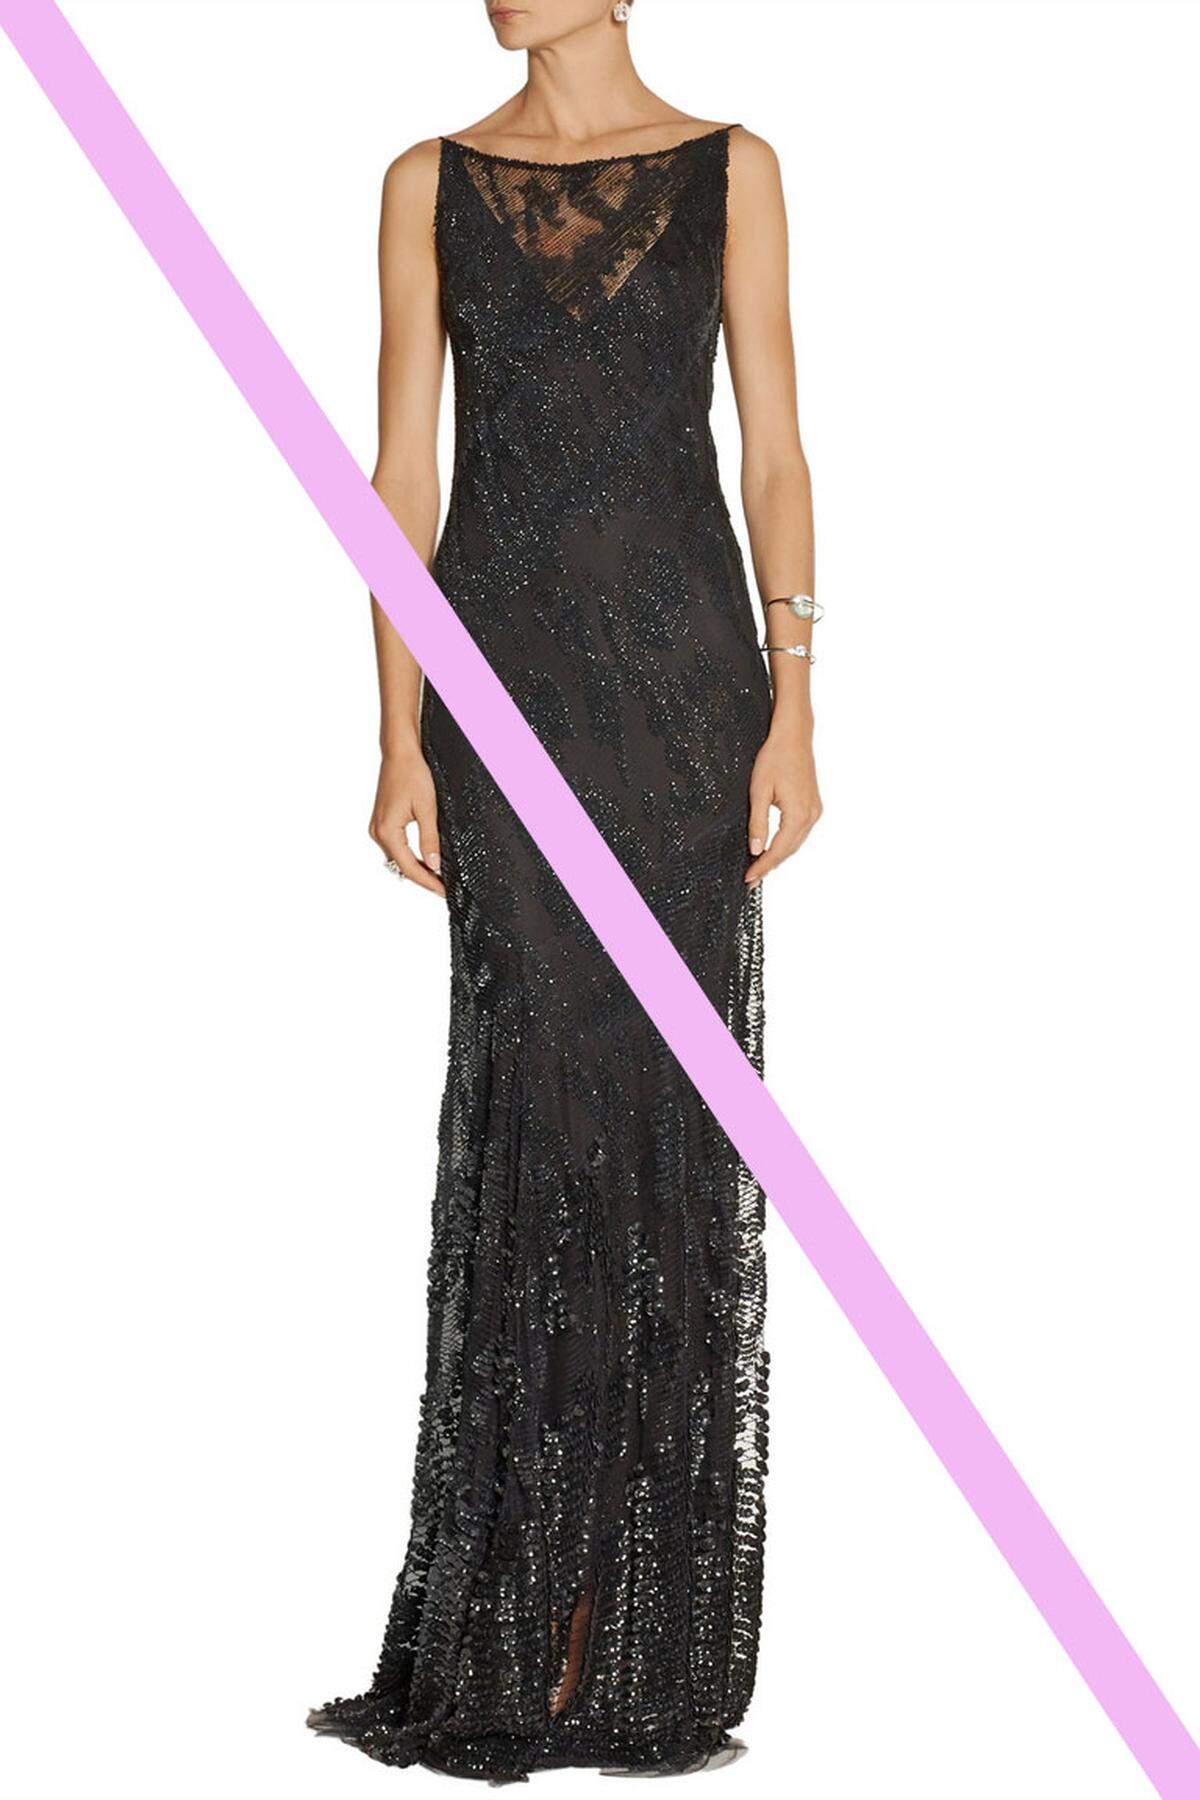 Schwarz ist als Farbe der Trauer für ein Hochzeitsfest eher unpassend.Tüllkleid von Donna Karan New York.